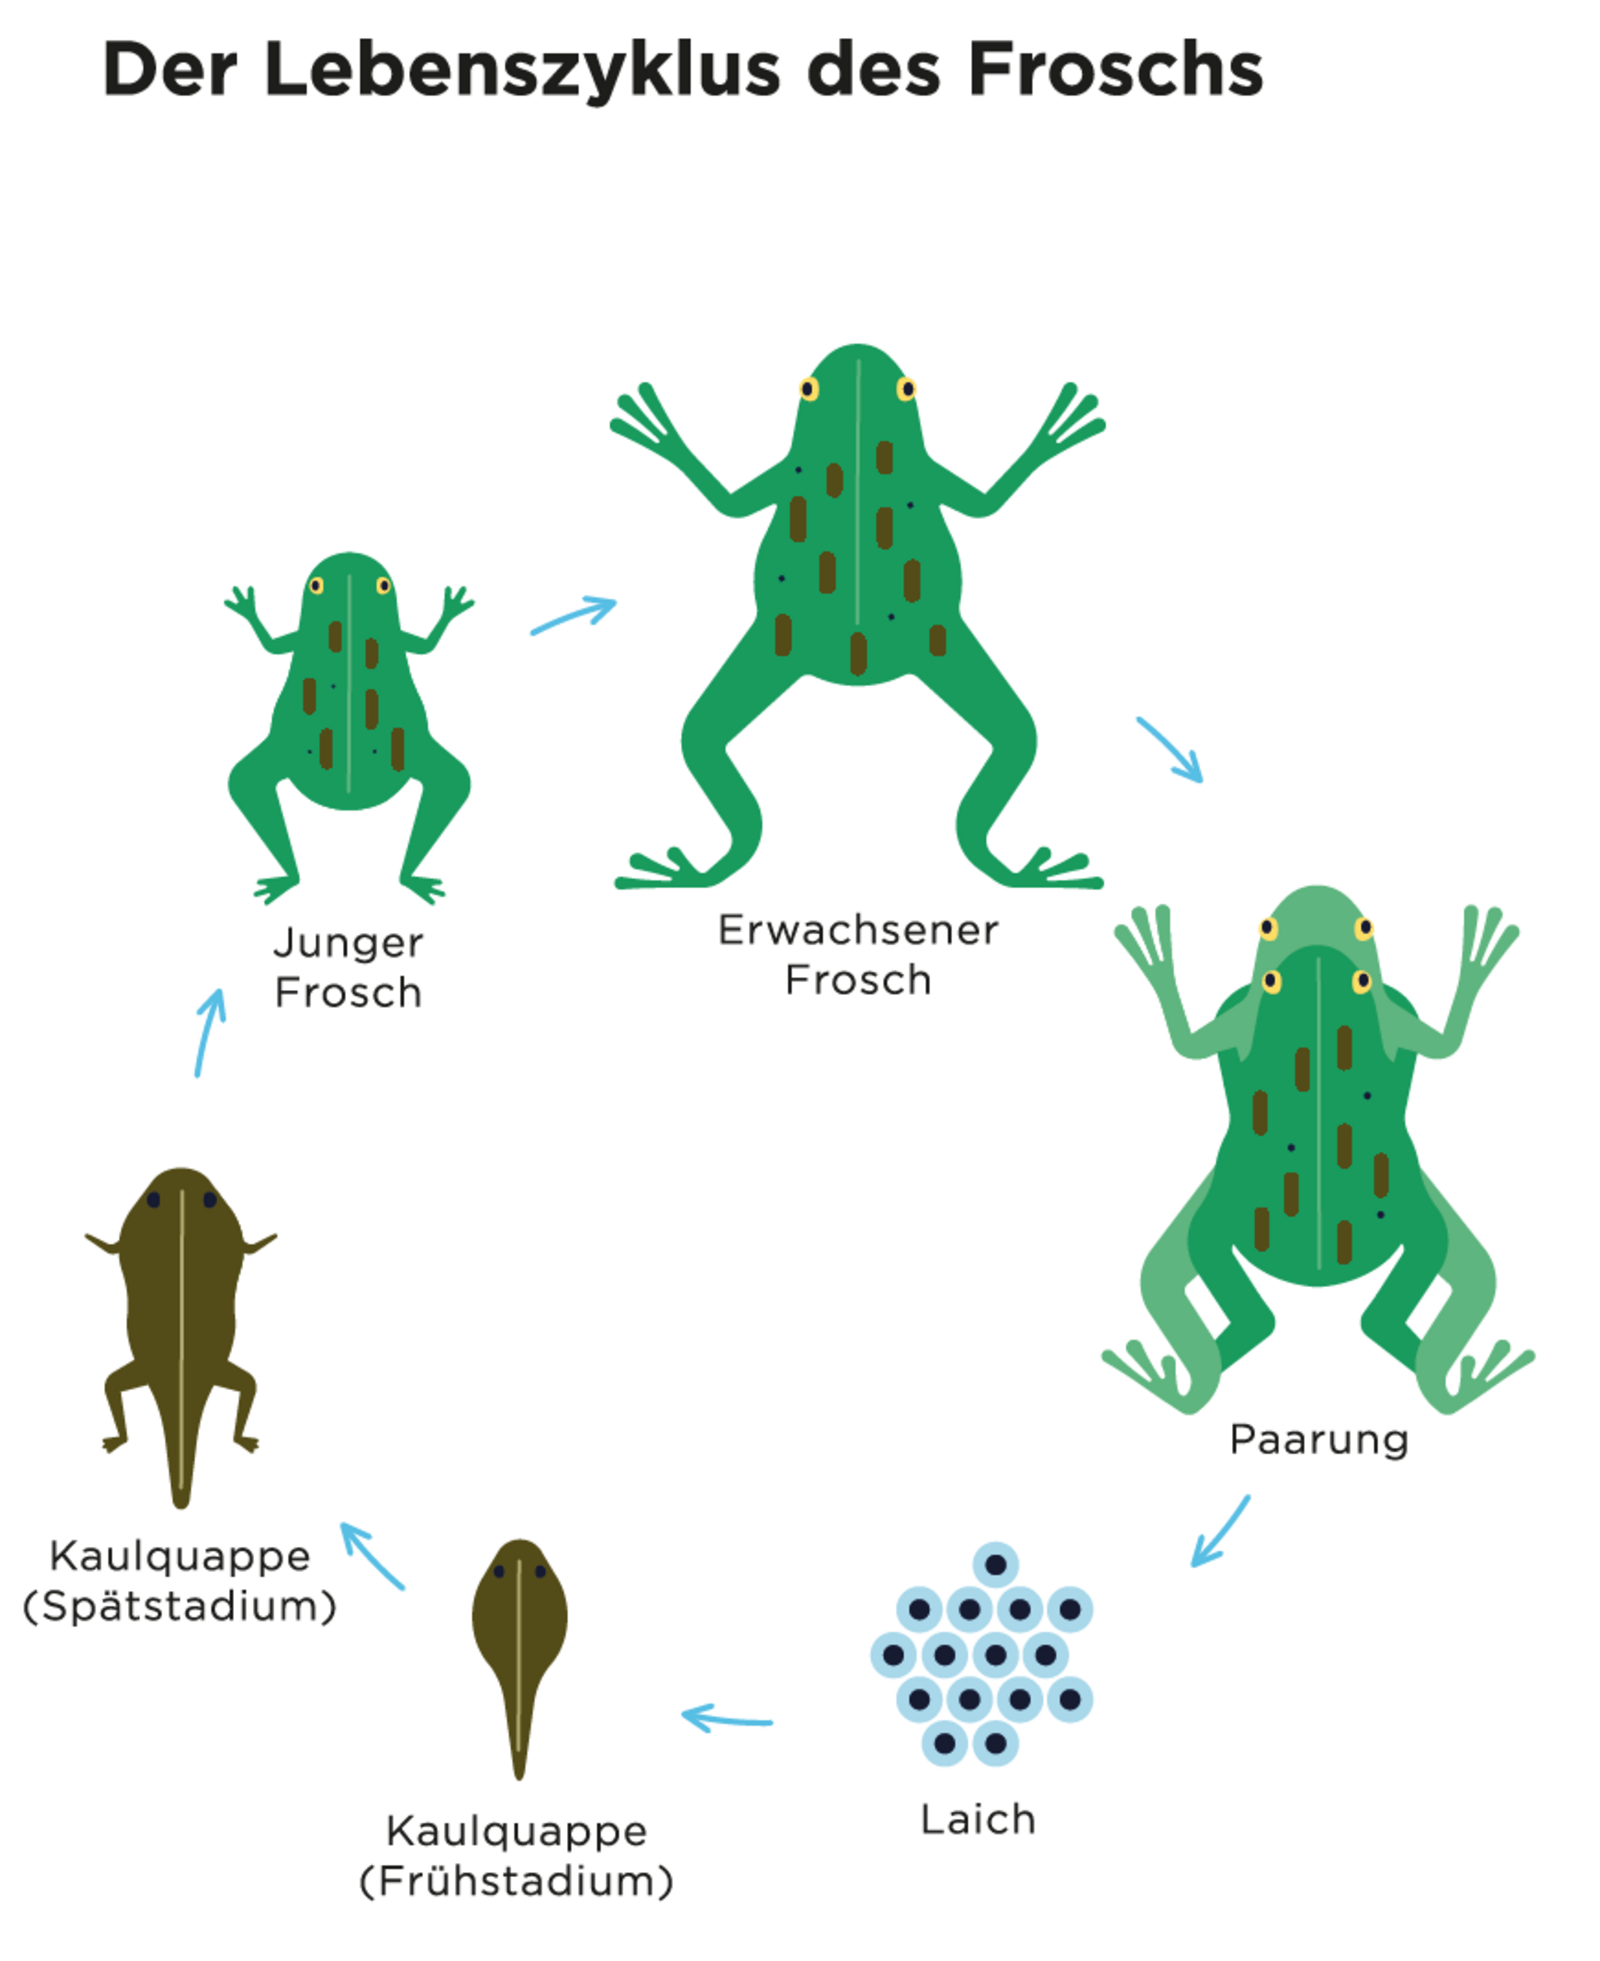 Auf der Abbildung sieht man den Lebenszyklus eines Frosches, von der Befruchtung, über den Laich zur Kaulquappe und zum Frosch.